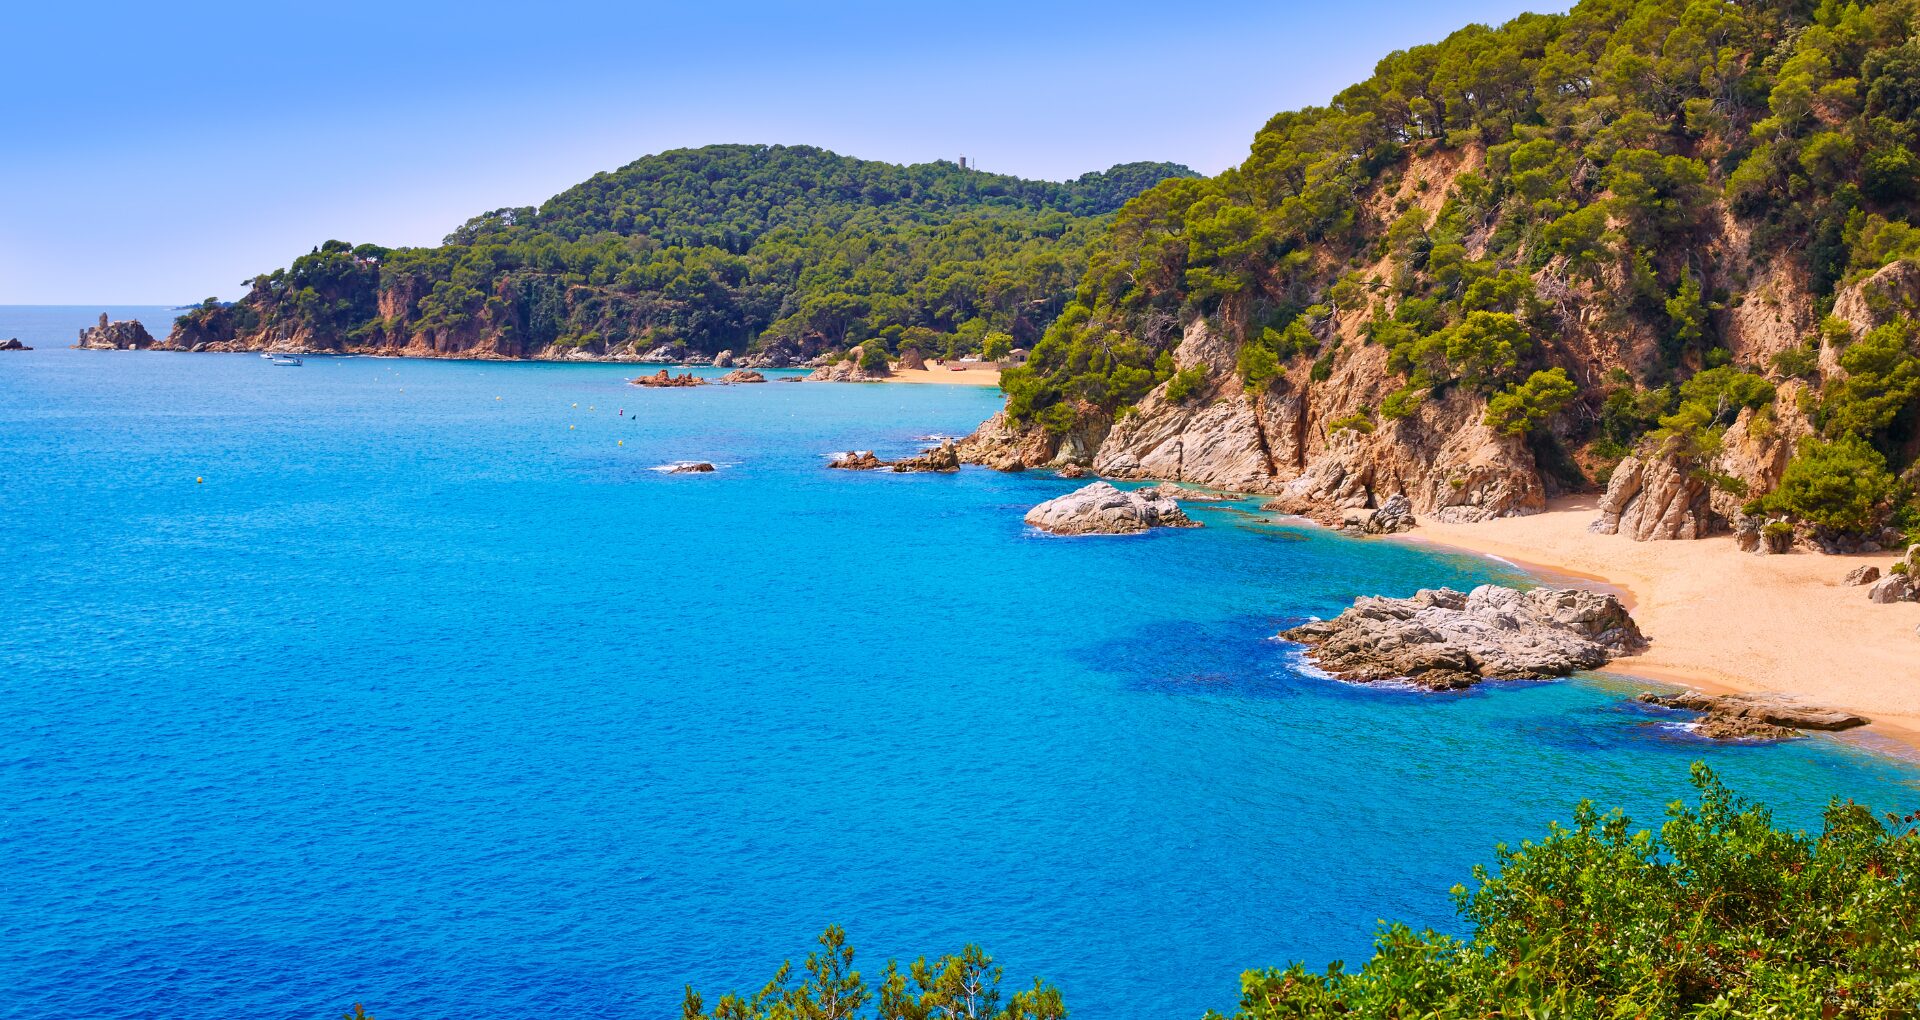 Vue sur la côte et la mer bleue turquoise de la Costa Brava, en Espagne